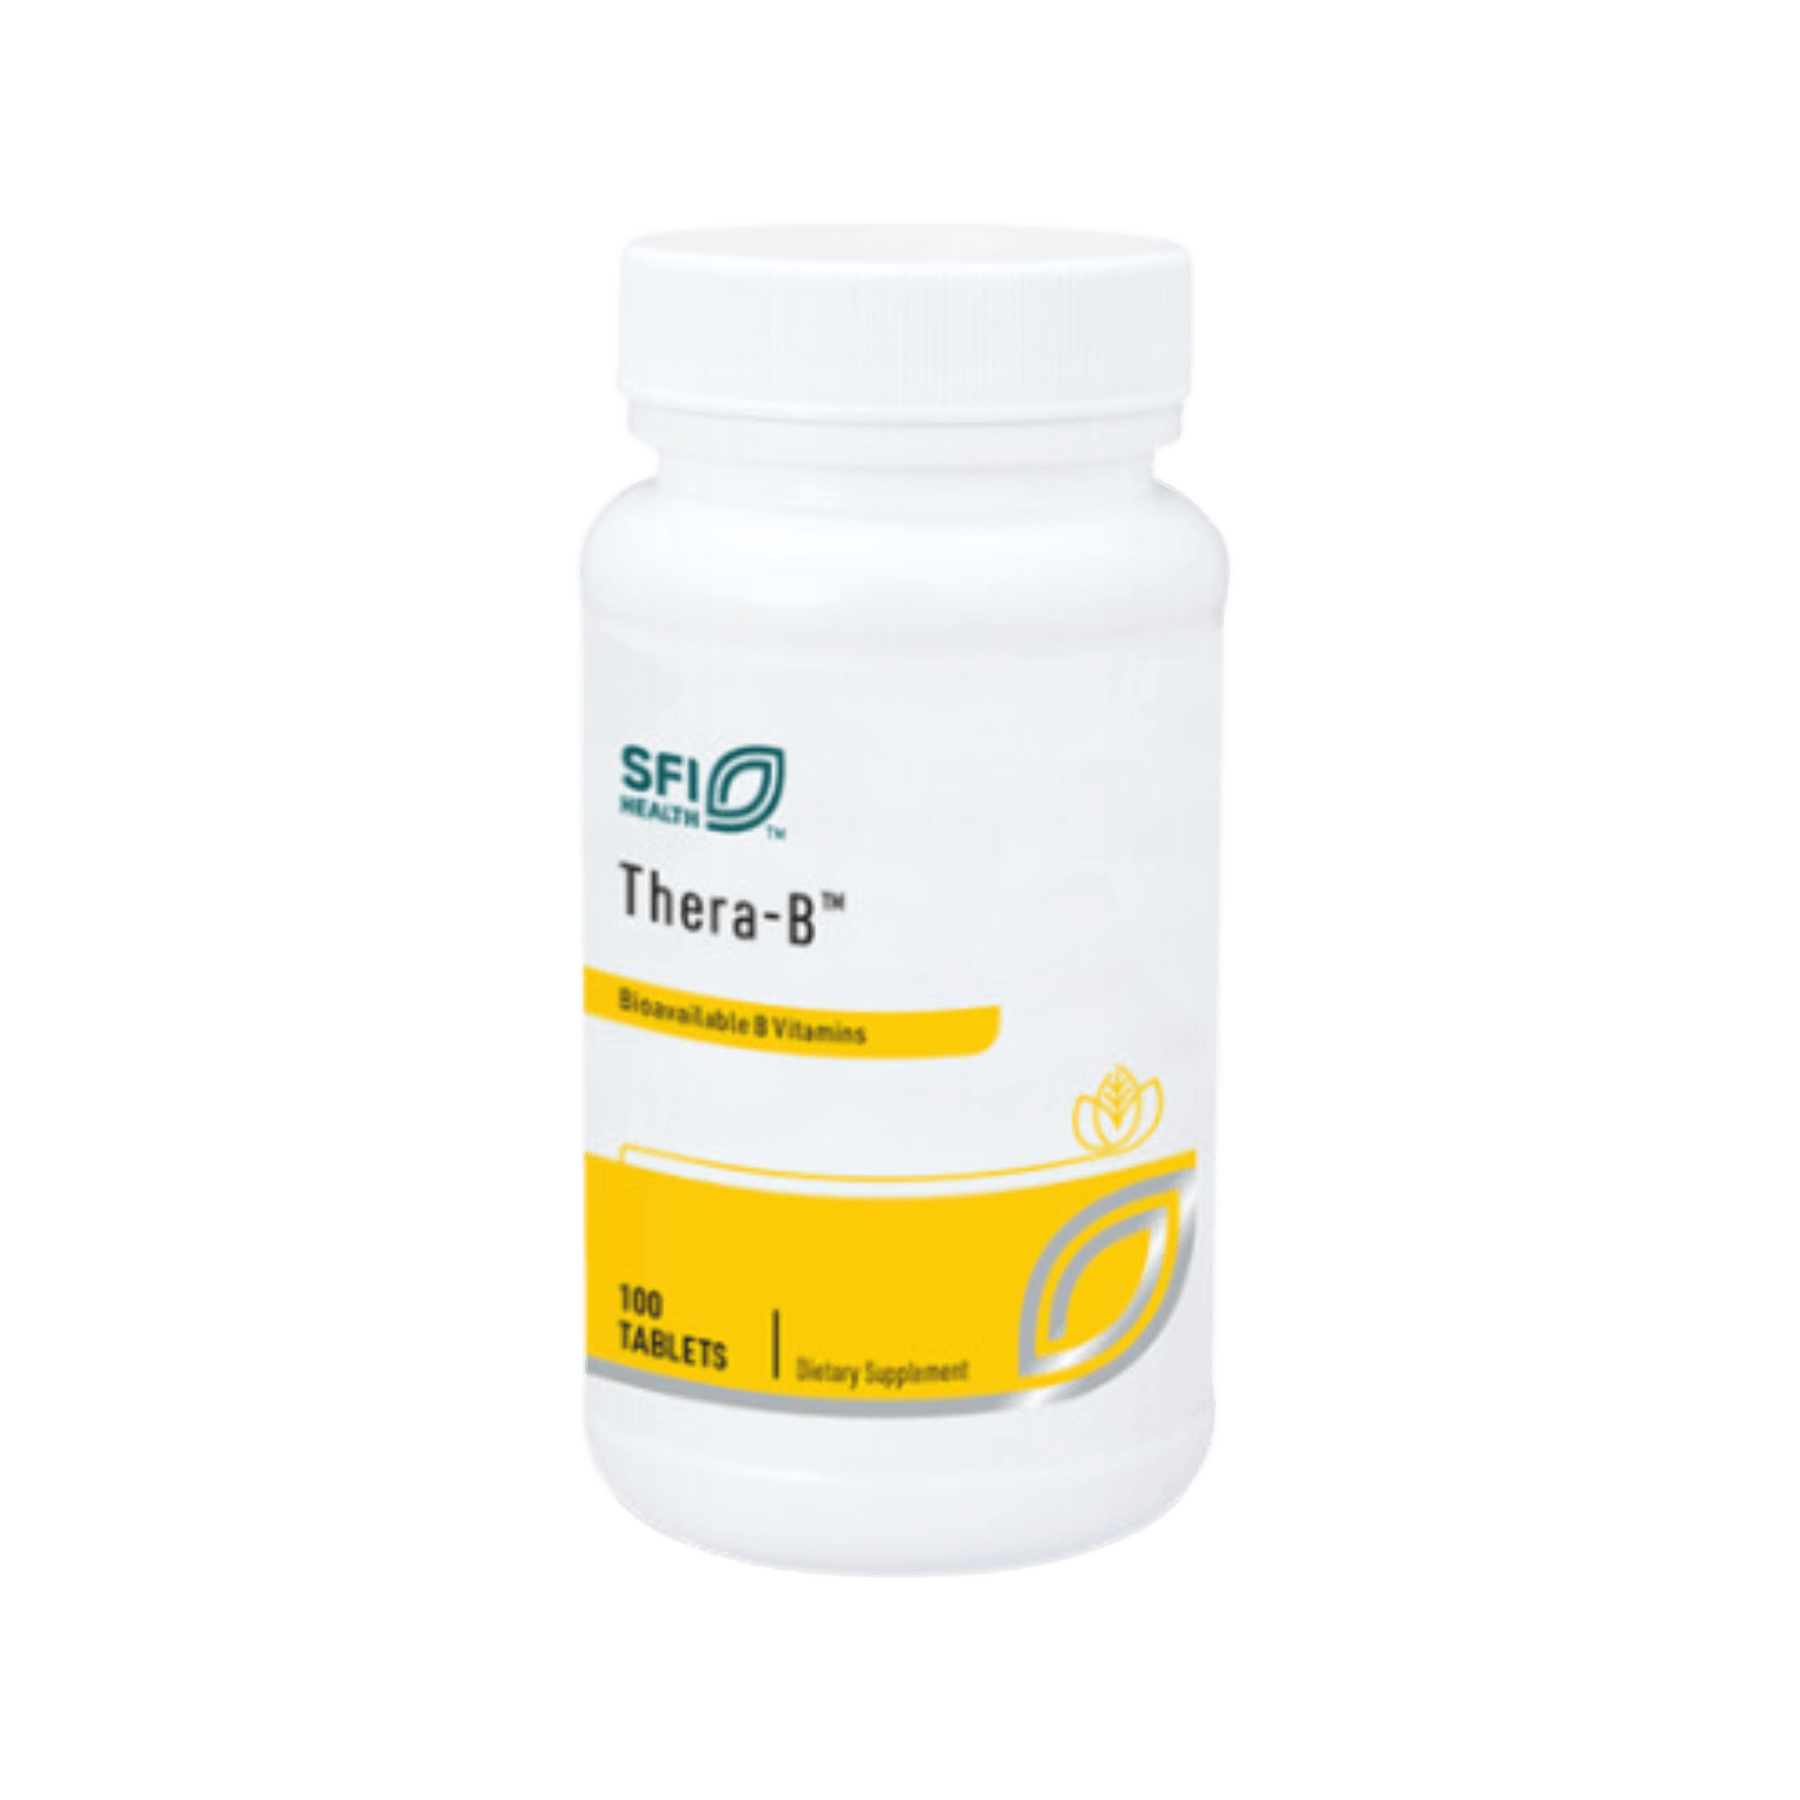 SFI Health Thera-B Tablets